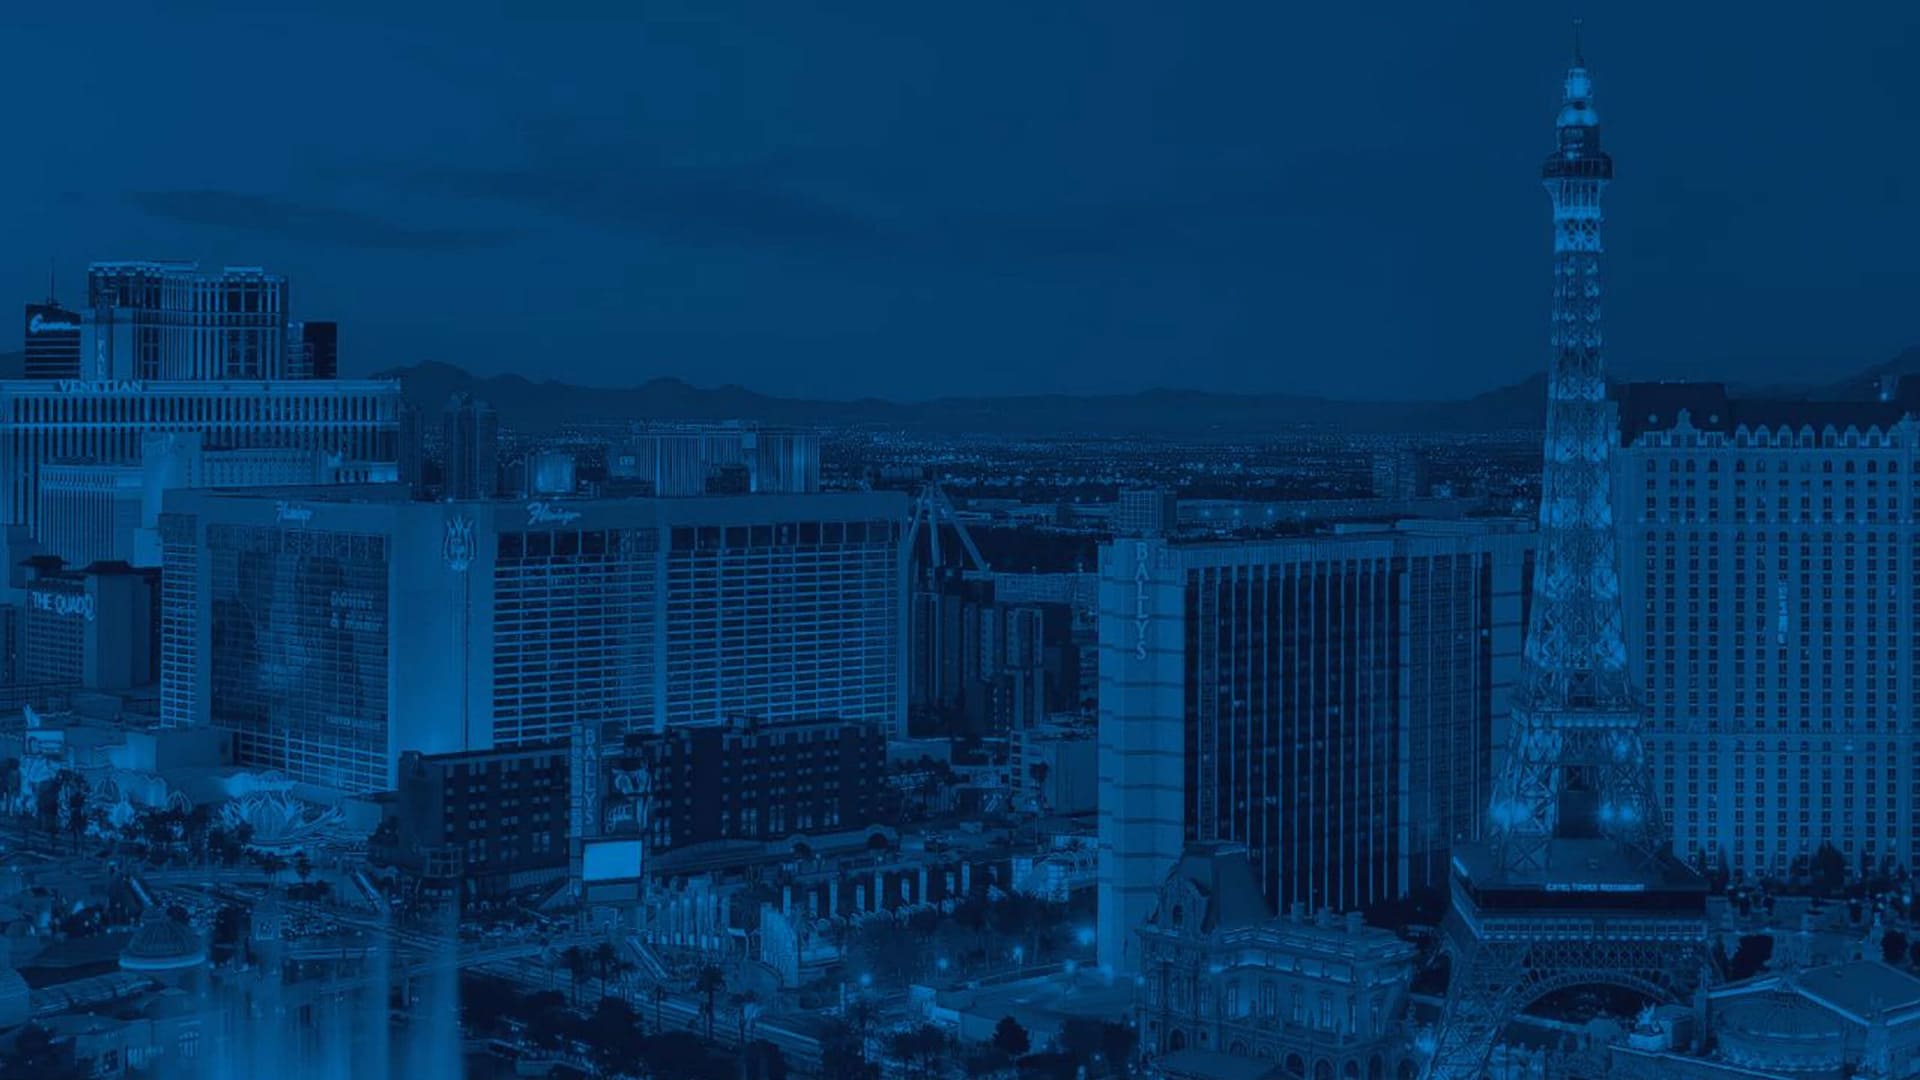 ”持続可能で安全な都市ラスベガス”のイメージ画像 / Image of ”Las Vegas – A Sustainable and Safe City”